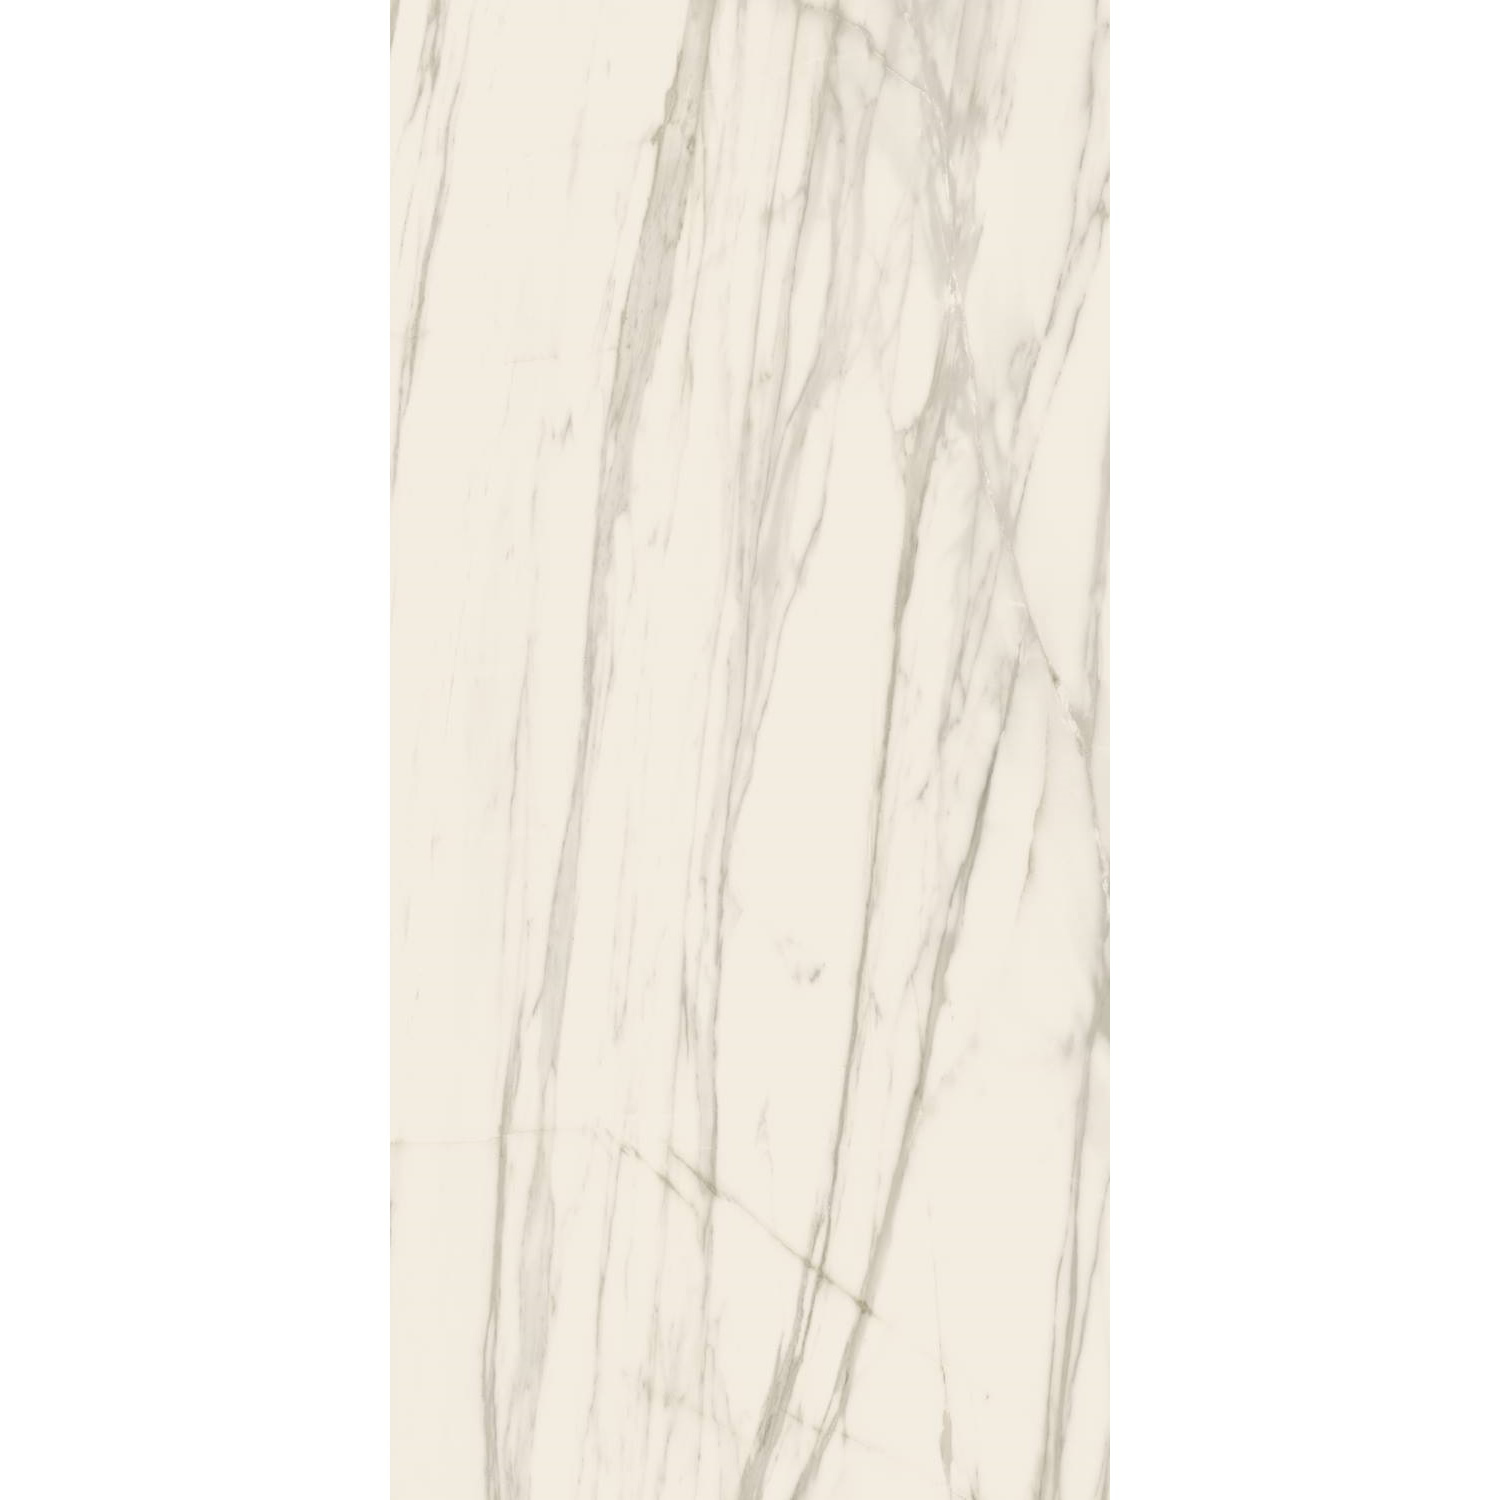 Vloertegel XL Etile Venato White Glans 120x260 cm E-Tile